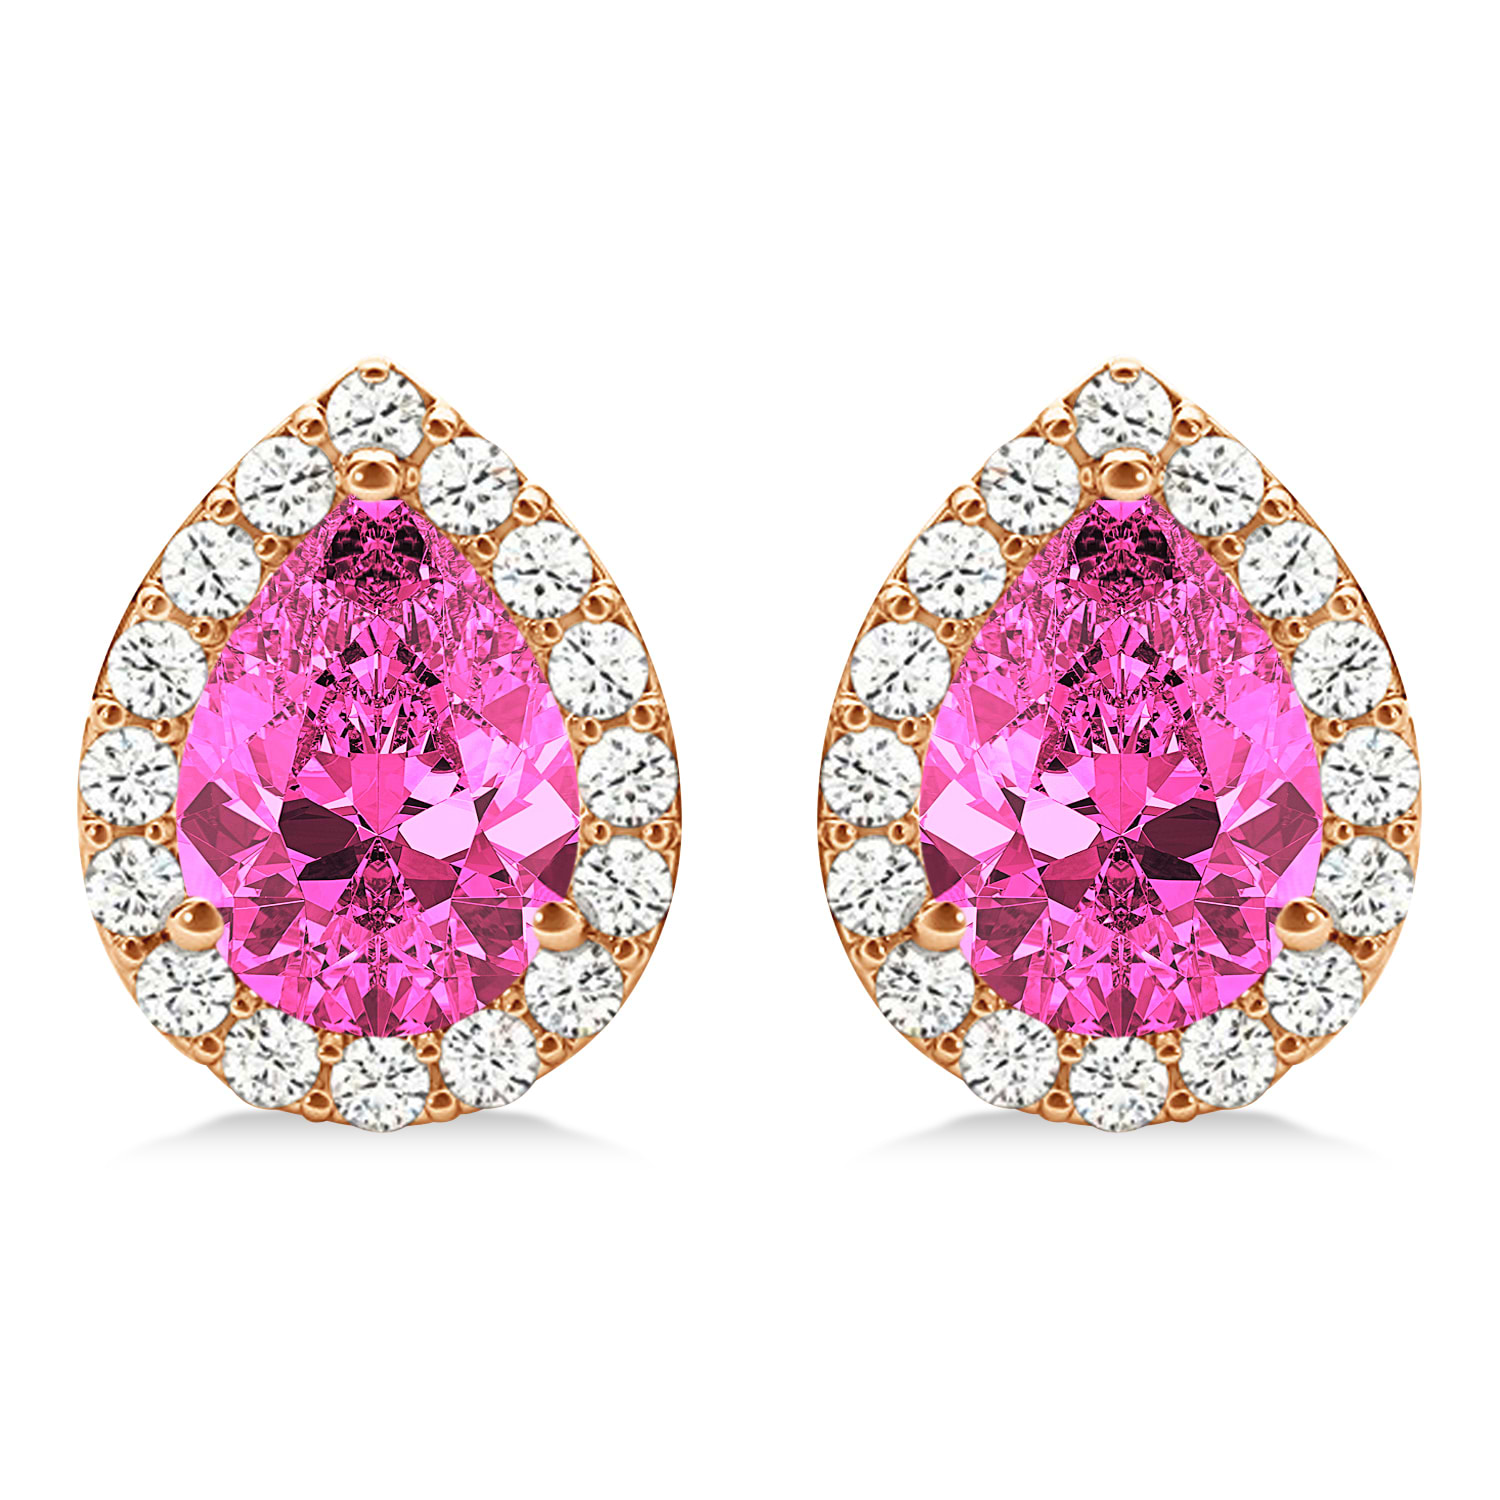 Teardrop Pink Sapphire & Diamond Halo Earrings 14k Rose Gold (1.74ct)